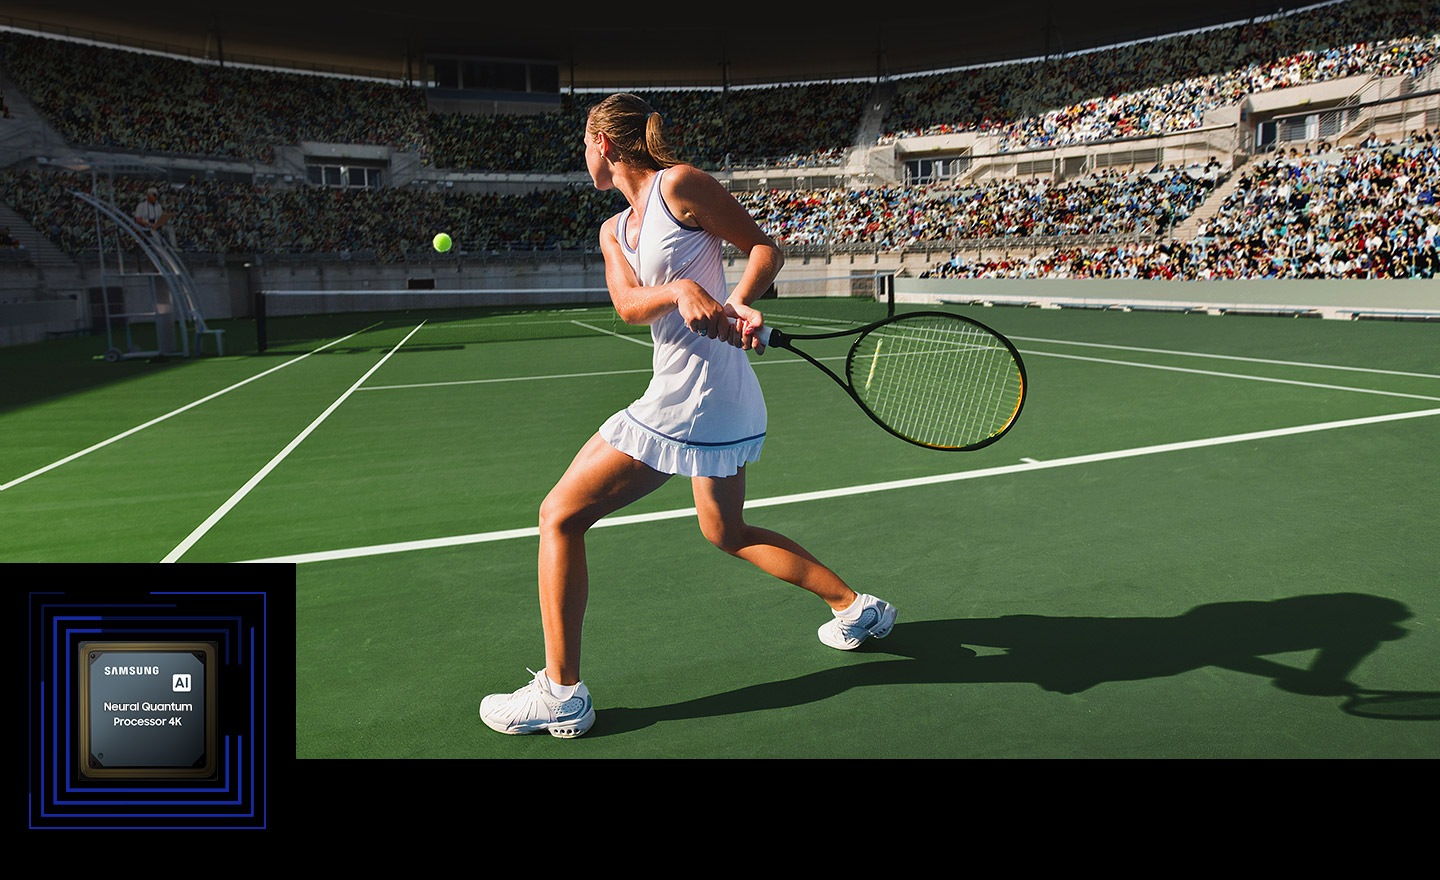 Vari elementi della partita di tennis tra cui pallina da tennis, campi da tennis a bordo campo, racchetta da tennis e pubblico sono evidenziati sullo schermo. Mostra la capacità del processore Samsung AI Neural Quantum 4K di migliorare la qualità in tempo reale.